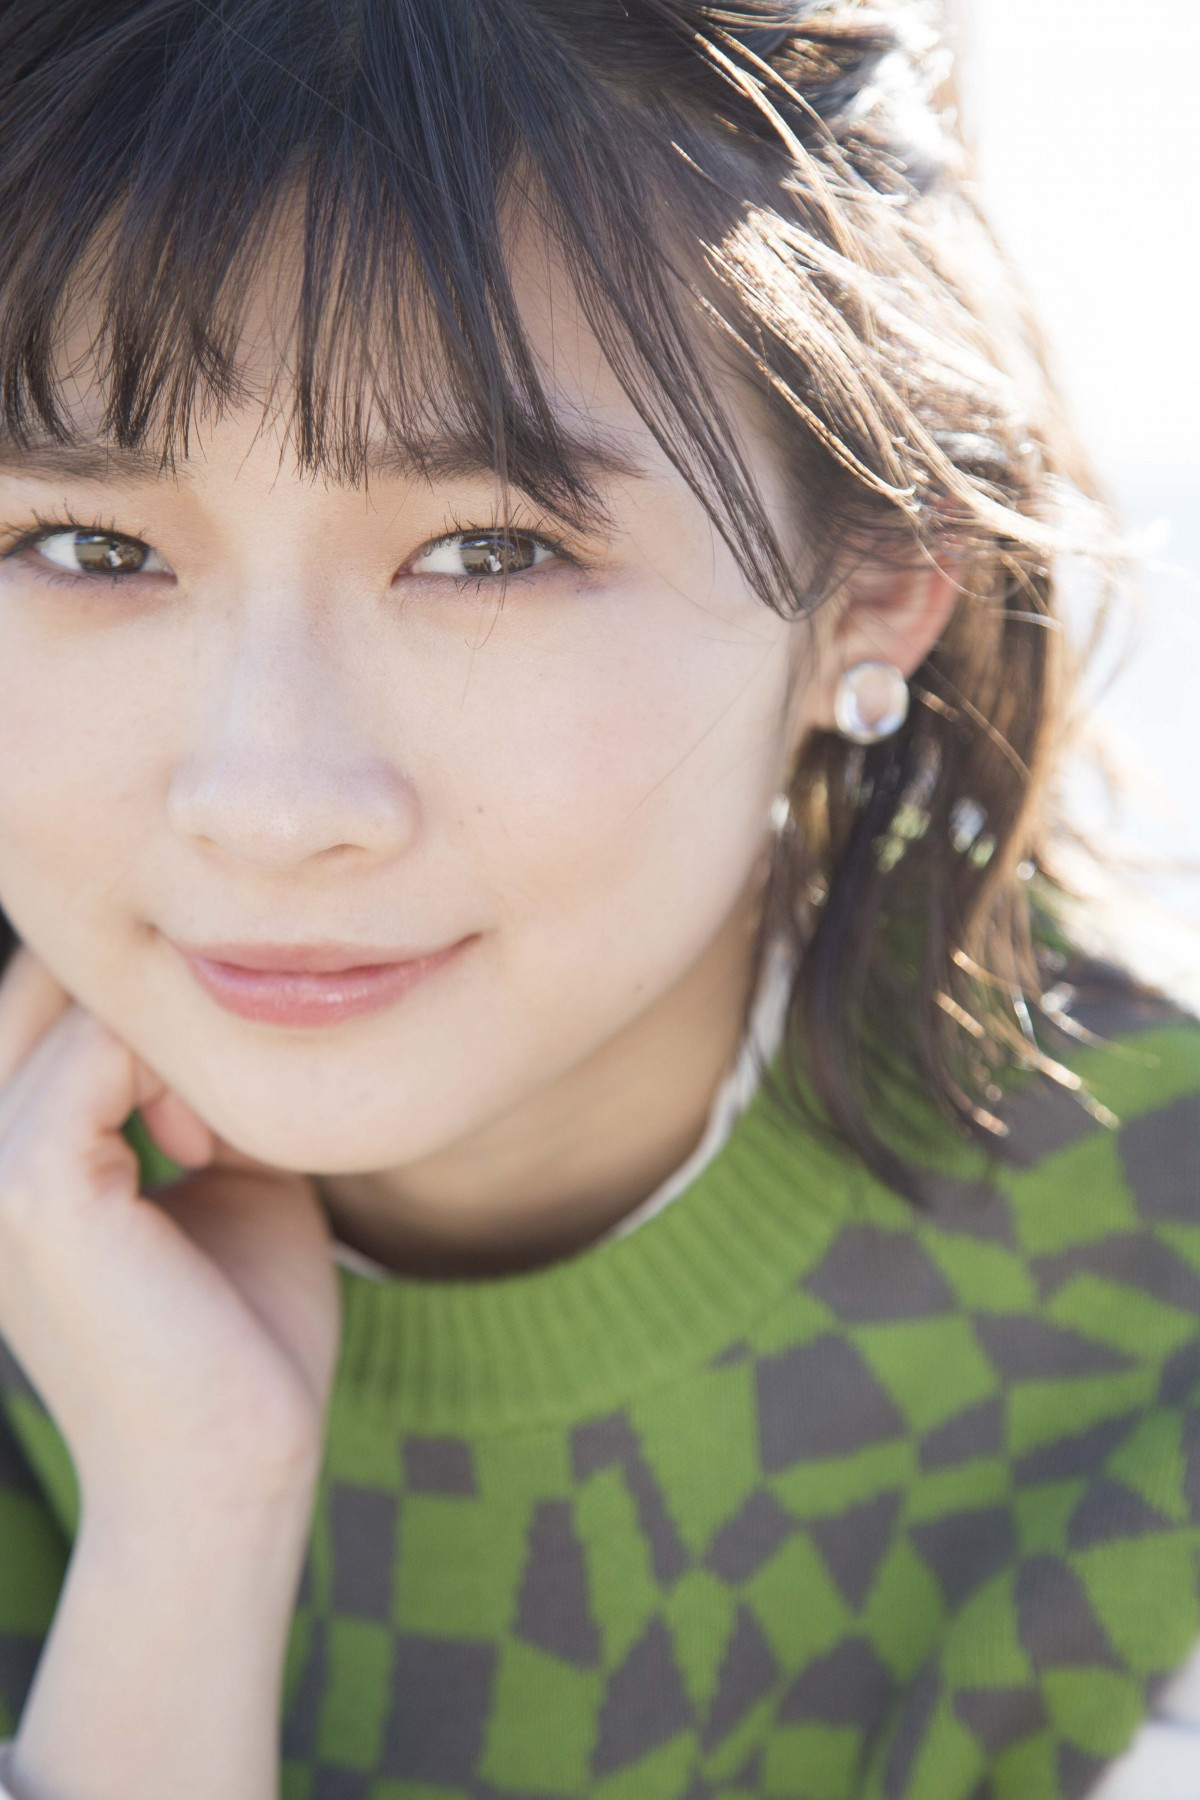 伊藤沙莉 初のフォト エッセイ集発売 生い立ち 家族 女優第2章をつづる Oricon News